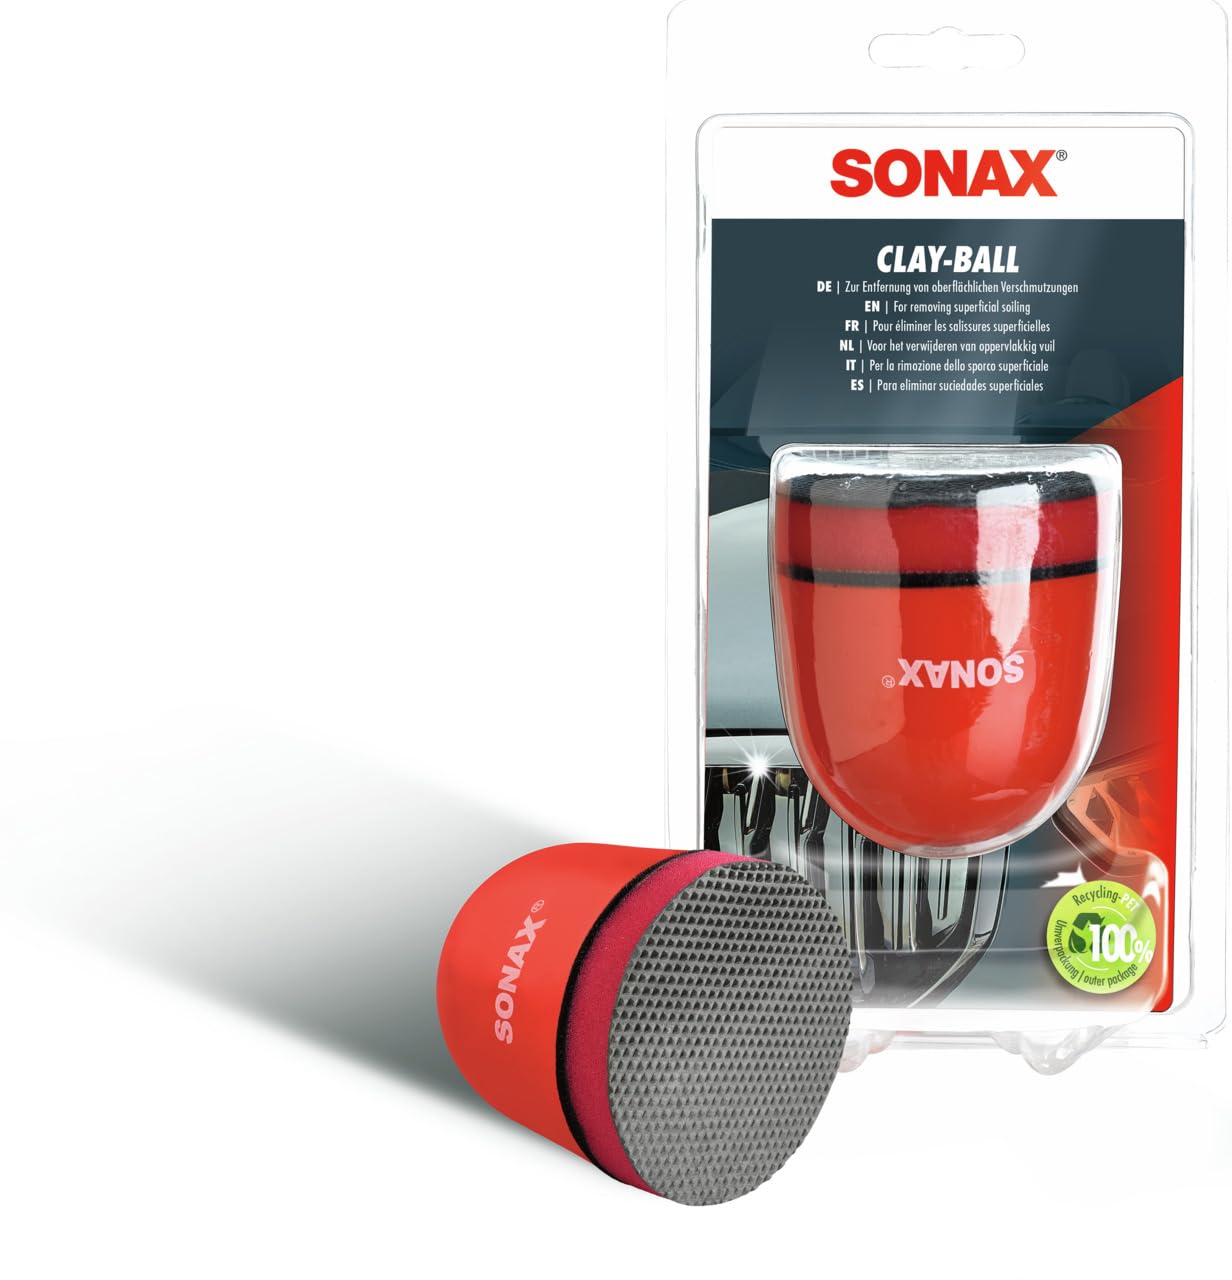 SONAX Clay-Ball (1 Stück) Problemlöser gegen hartnäckige Verschmutzungen auf Lack und Glas | Art-Nr. 04197000 von SONAX